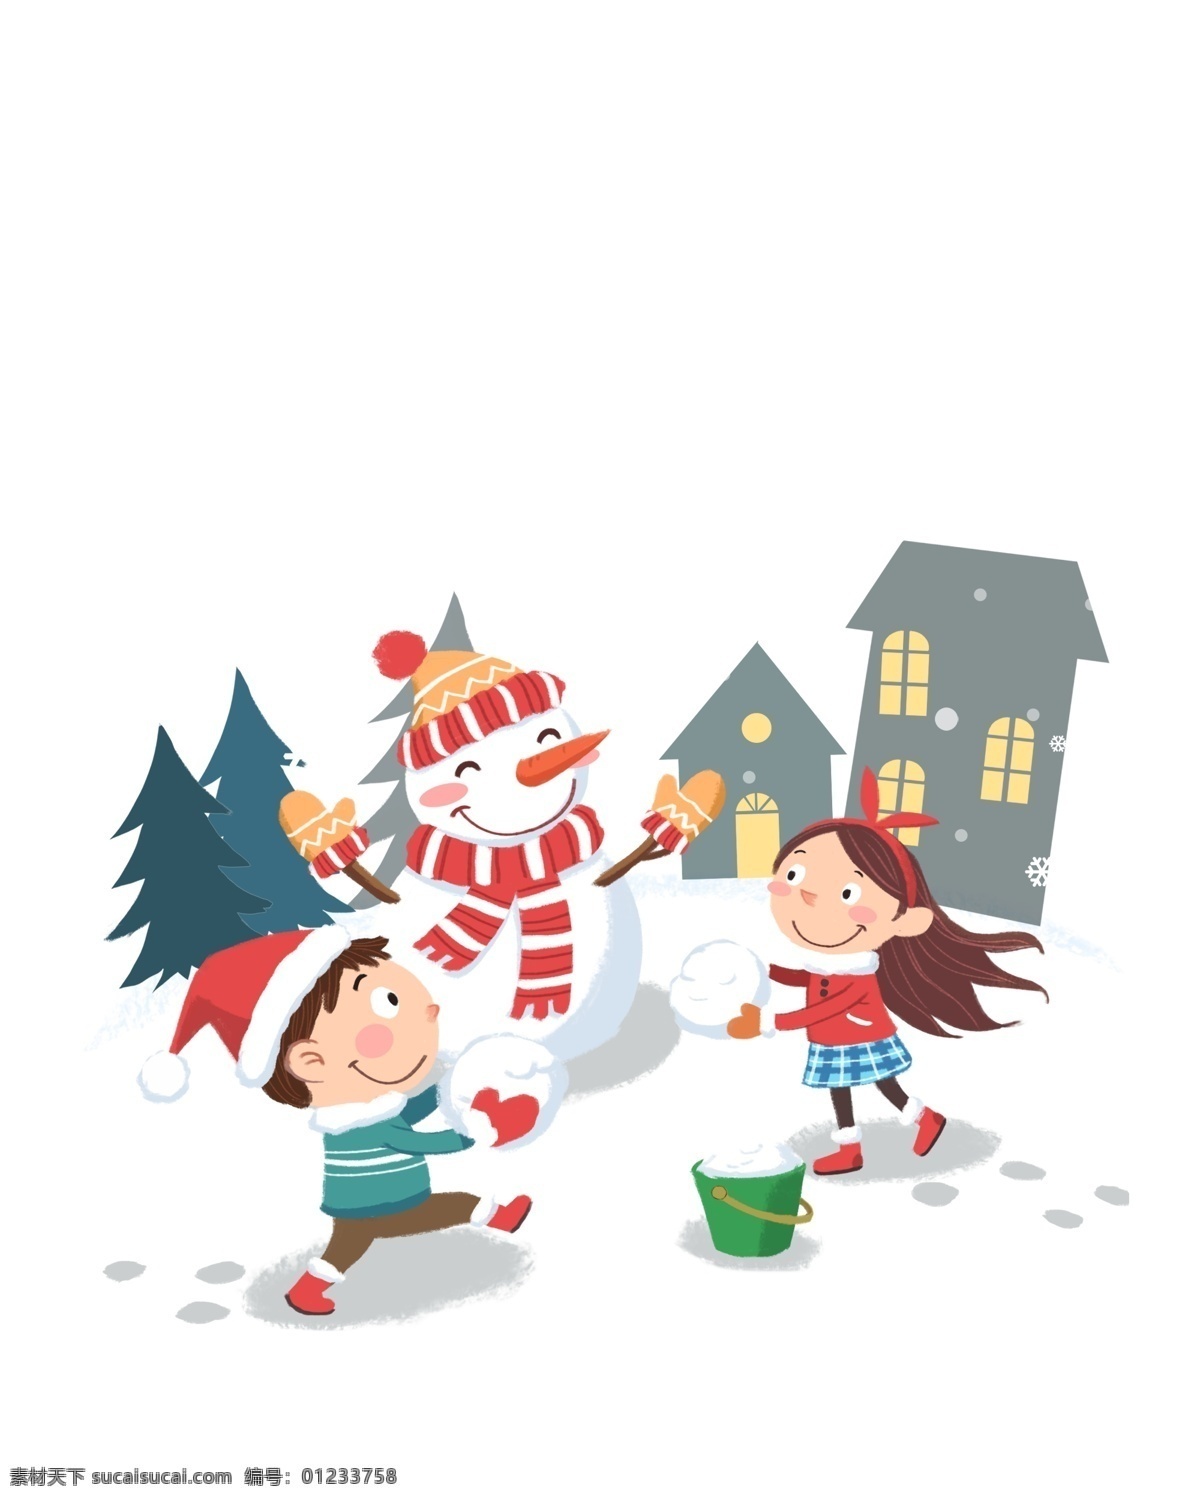 冬日 圣诞节 卡通 手绘 雪人 戴 圣诞 帽 人物 背景 冬天 打雪仗 玩 圣诞帽 圣诞夜 雪 插画 卡通手绘 戴圣诞帽小孩 雪夜 雪花